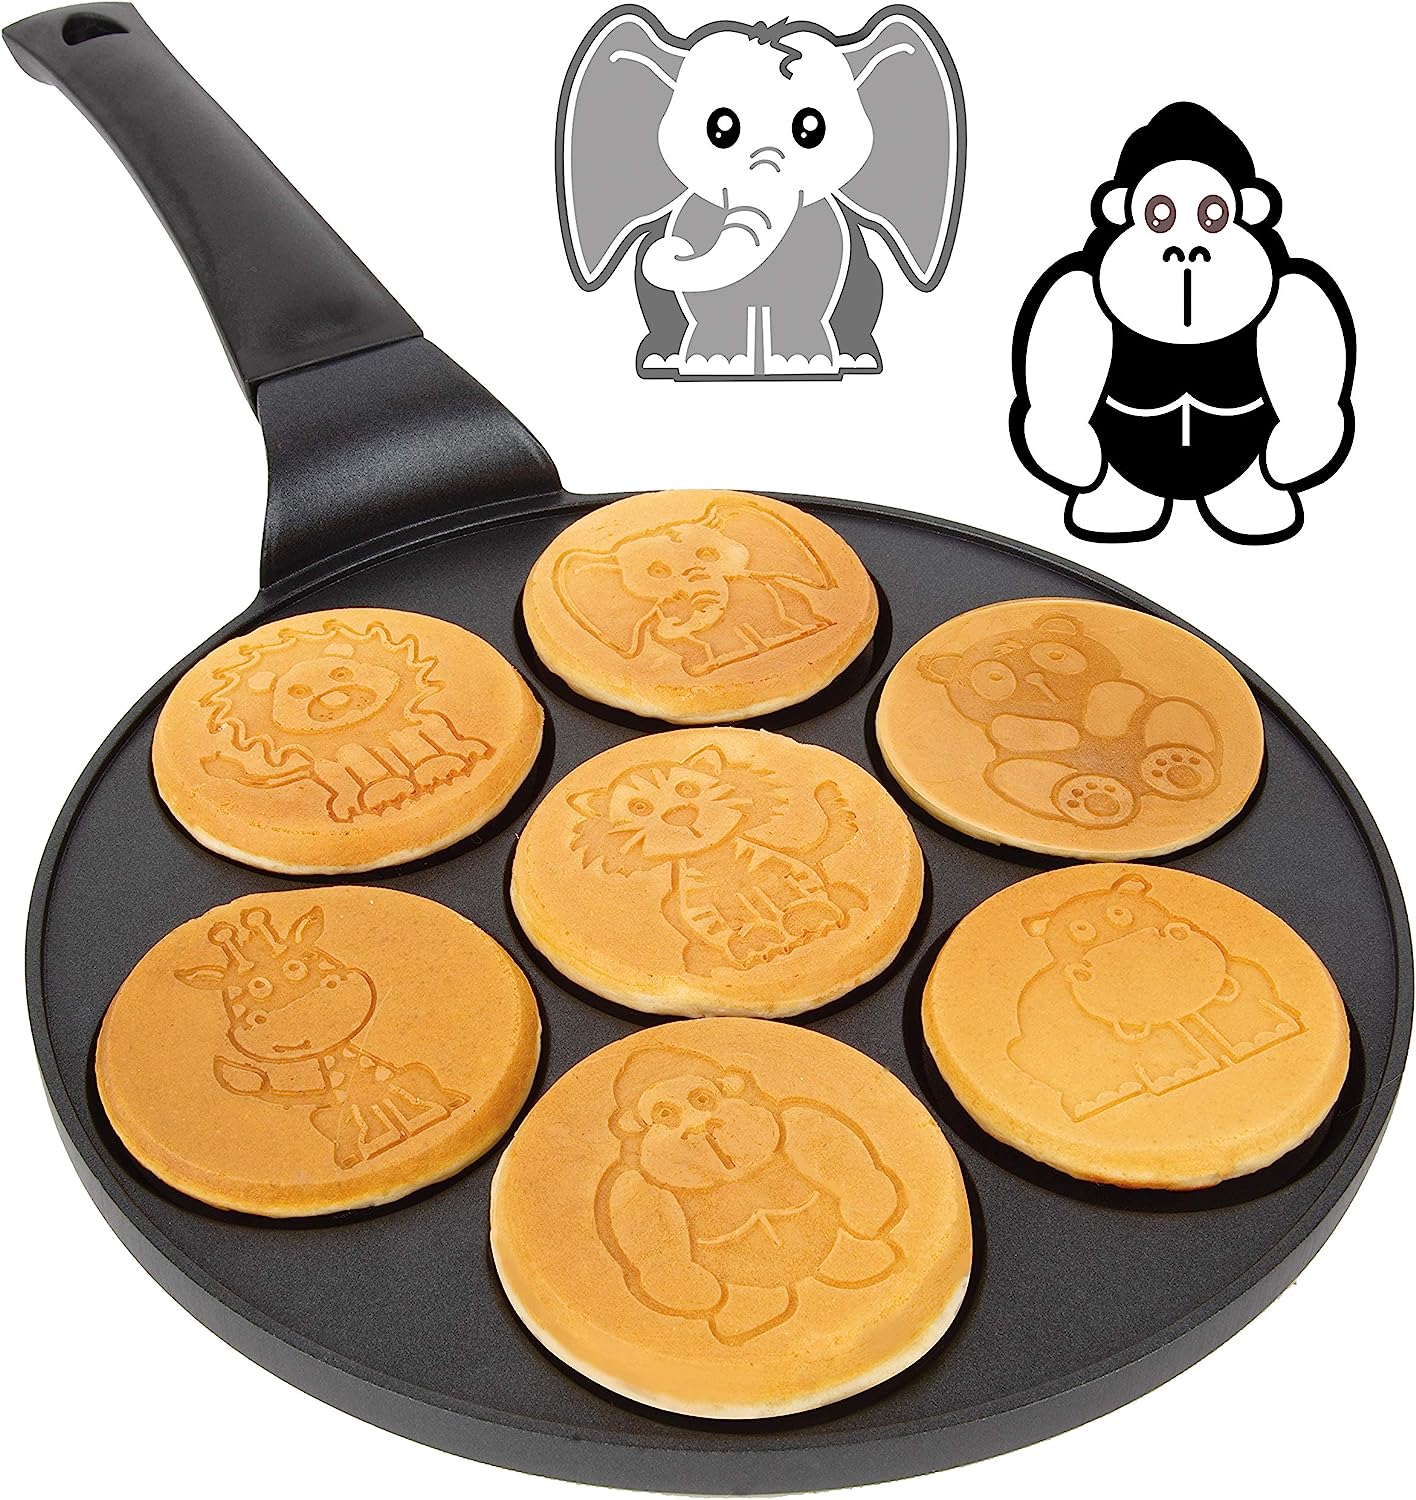 Pancake Pan With 7 Animal Face Designs Plus 2 Bonus Spatulas